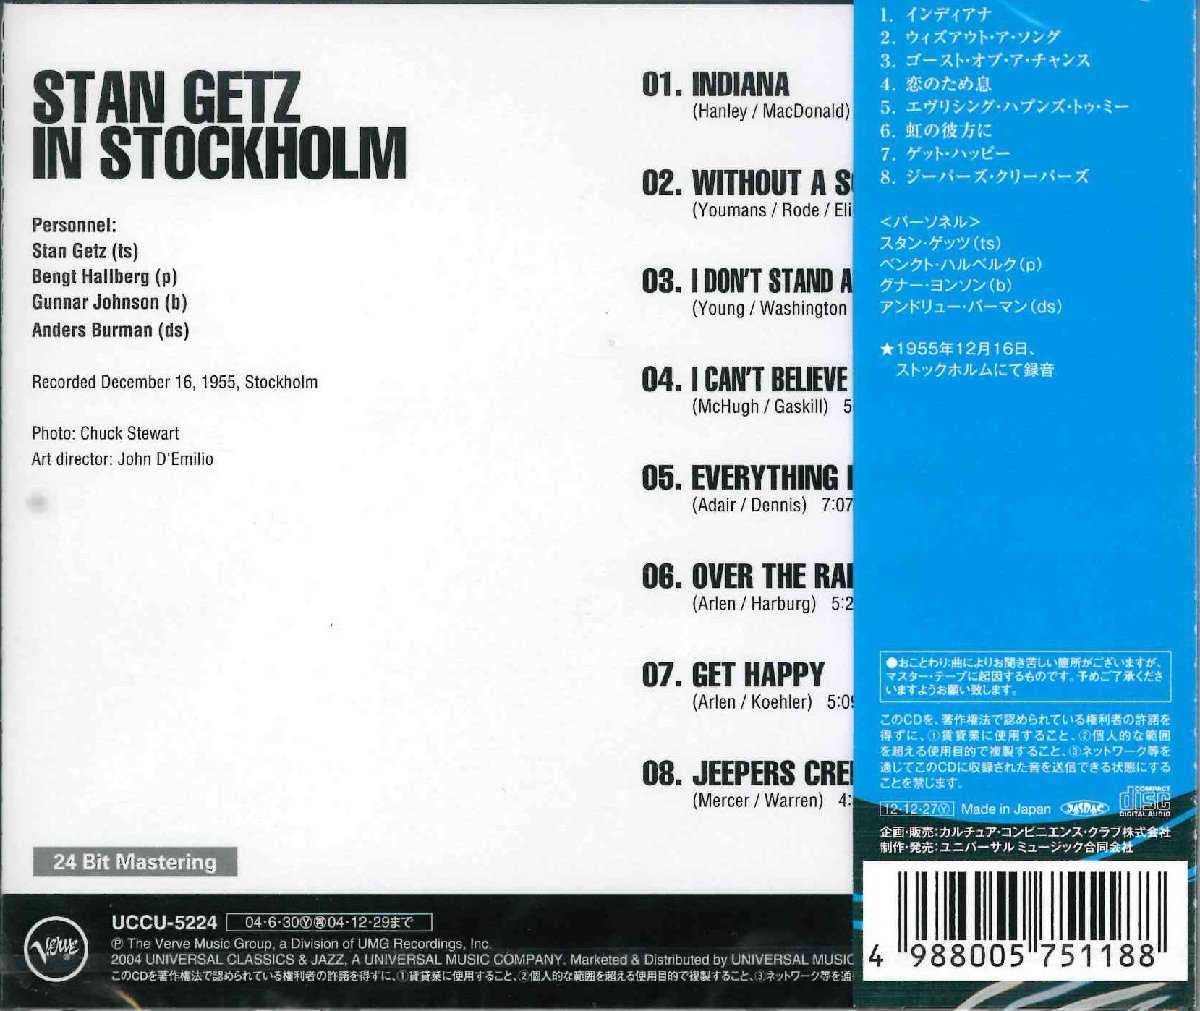 【未開封】[CD] スタン・ゲッツ / スタン・ゲッツ・イン・ストックホルム PROZ-1056 [CD0101]の画像2